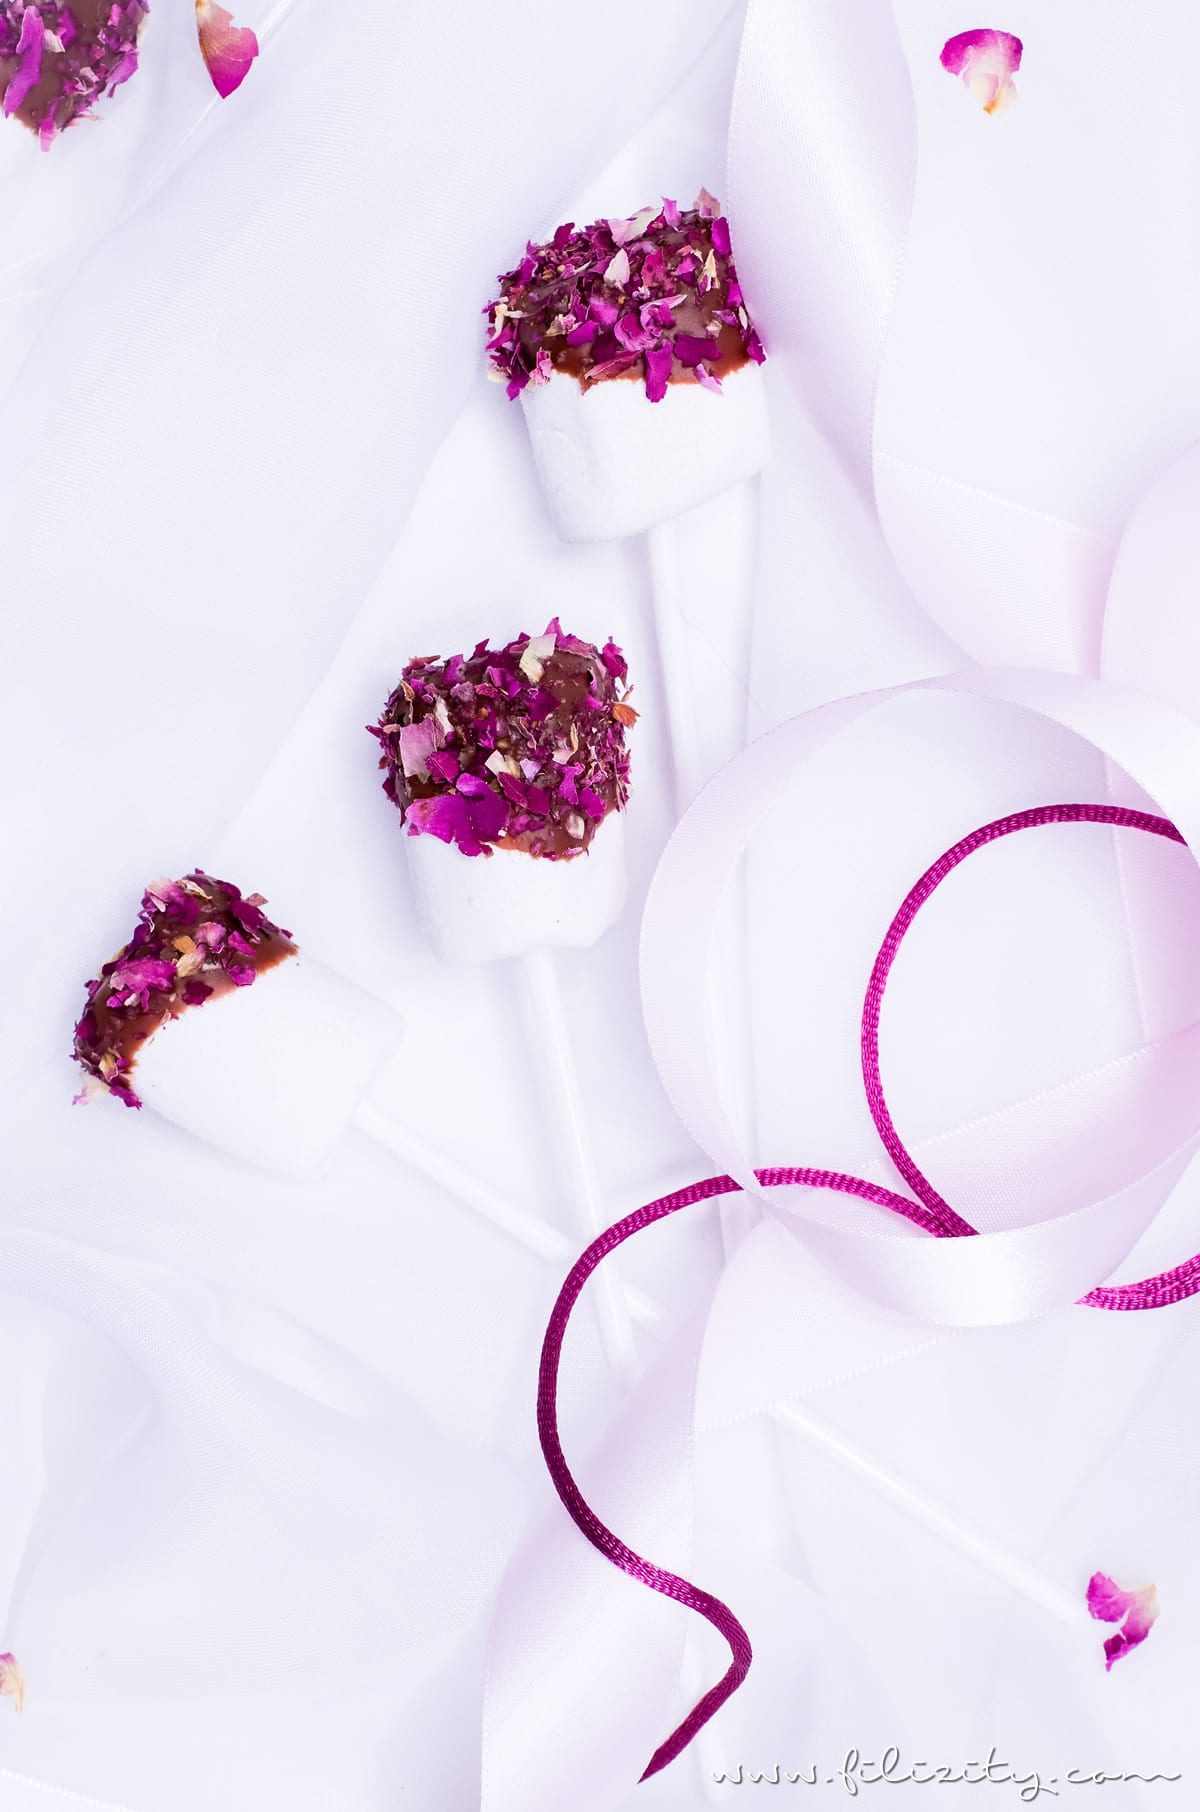 Schnelles Rezept für Marshmallow Pops mit Rosen | Last Minute DIY Geschenkidee für Valentinstag | Filizity.com | Food-Blog aus dem Rheinland #valentinstag #geschenkidee